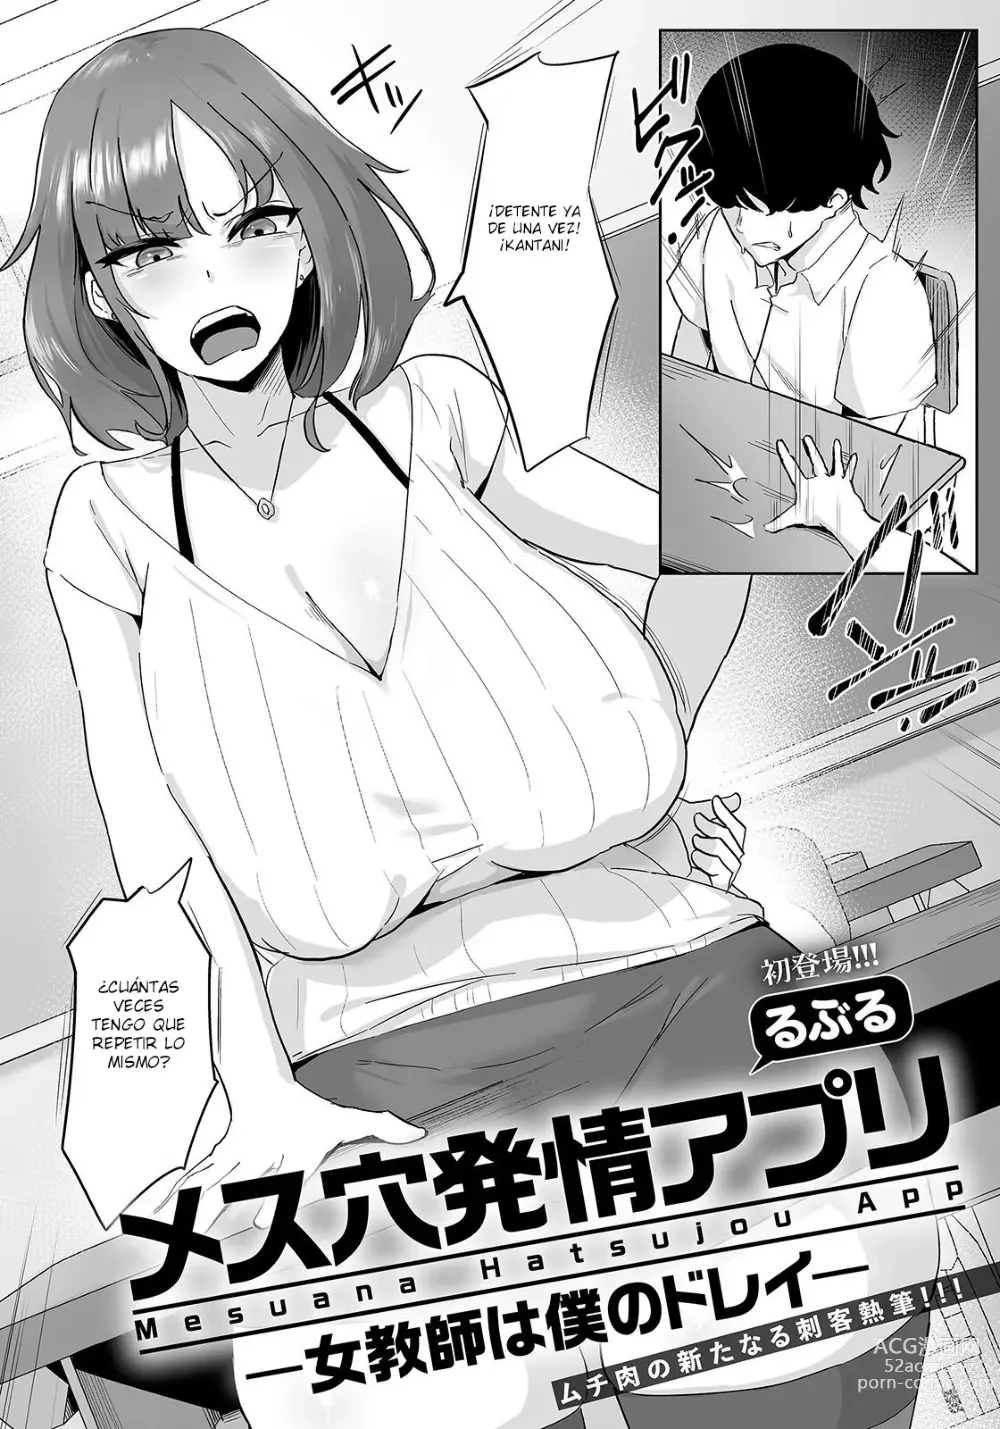 Page 1 of manga Mesuana Hatsujou Appli -Onna Kyoushi wa Boku no Dorei-